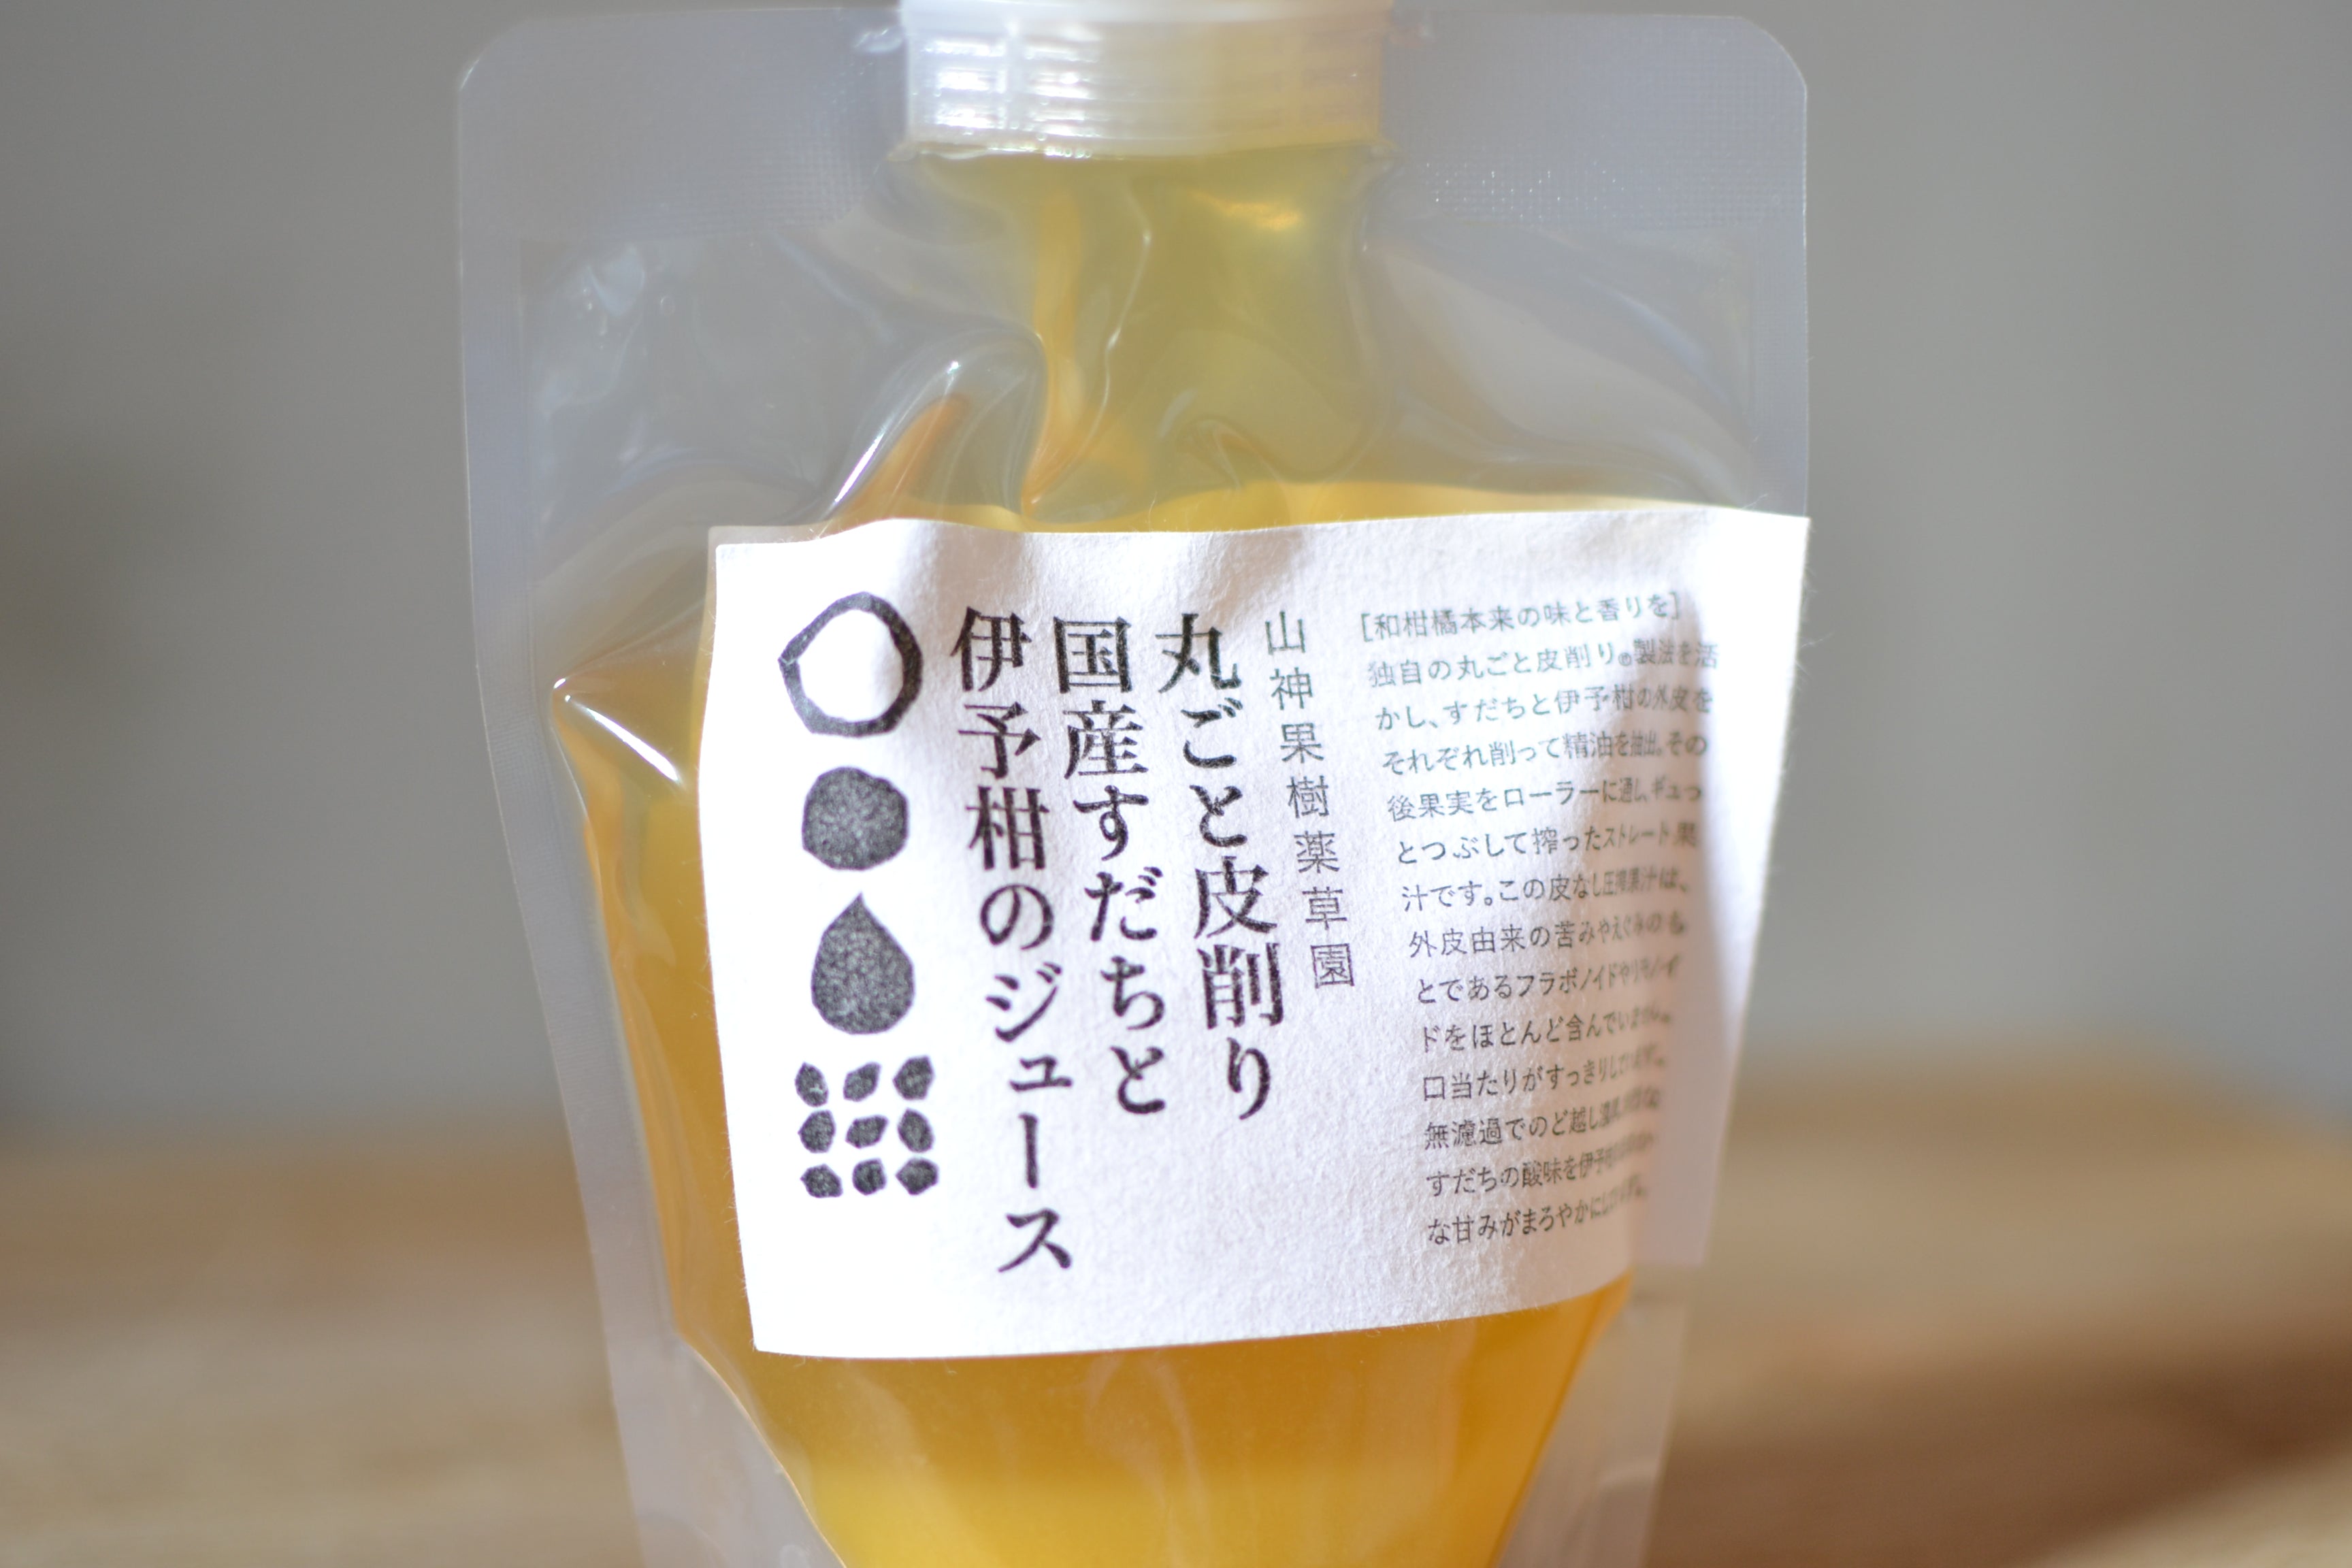 丸ごと皮削りすだちと伊予柑のジュース200ml MARKS&amp;WEB 松山油脂の山神果樹薬草園